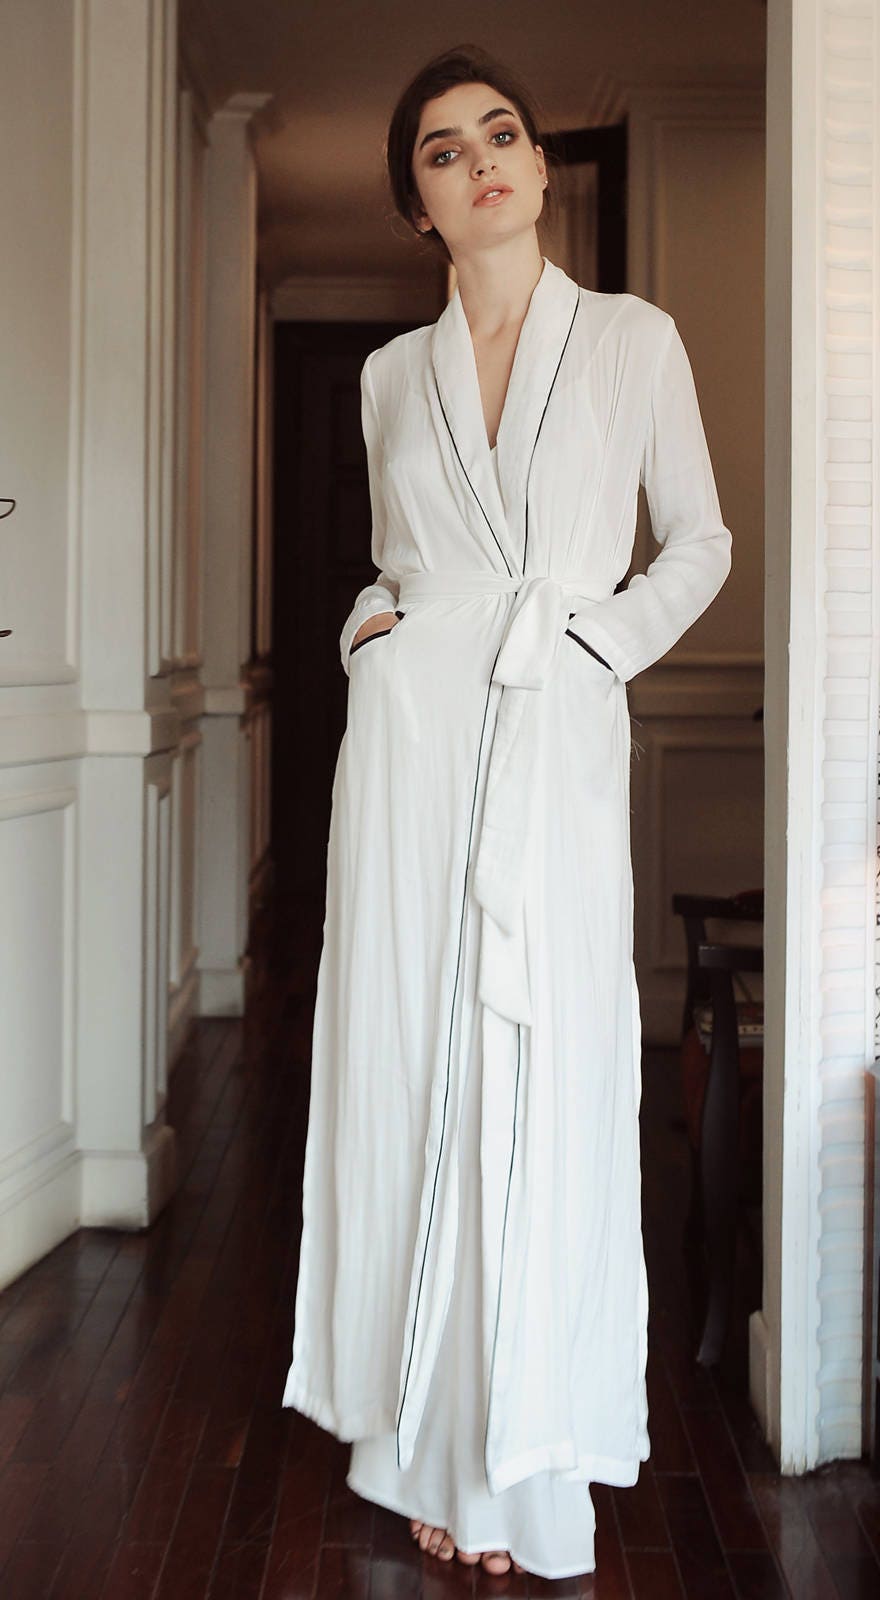 Women Silk Robe Robe With Piping Line Elegant Bridal Robe | Etsy UK